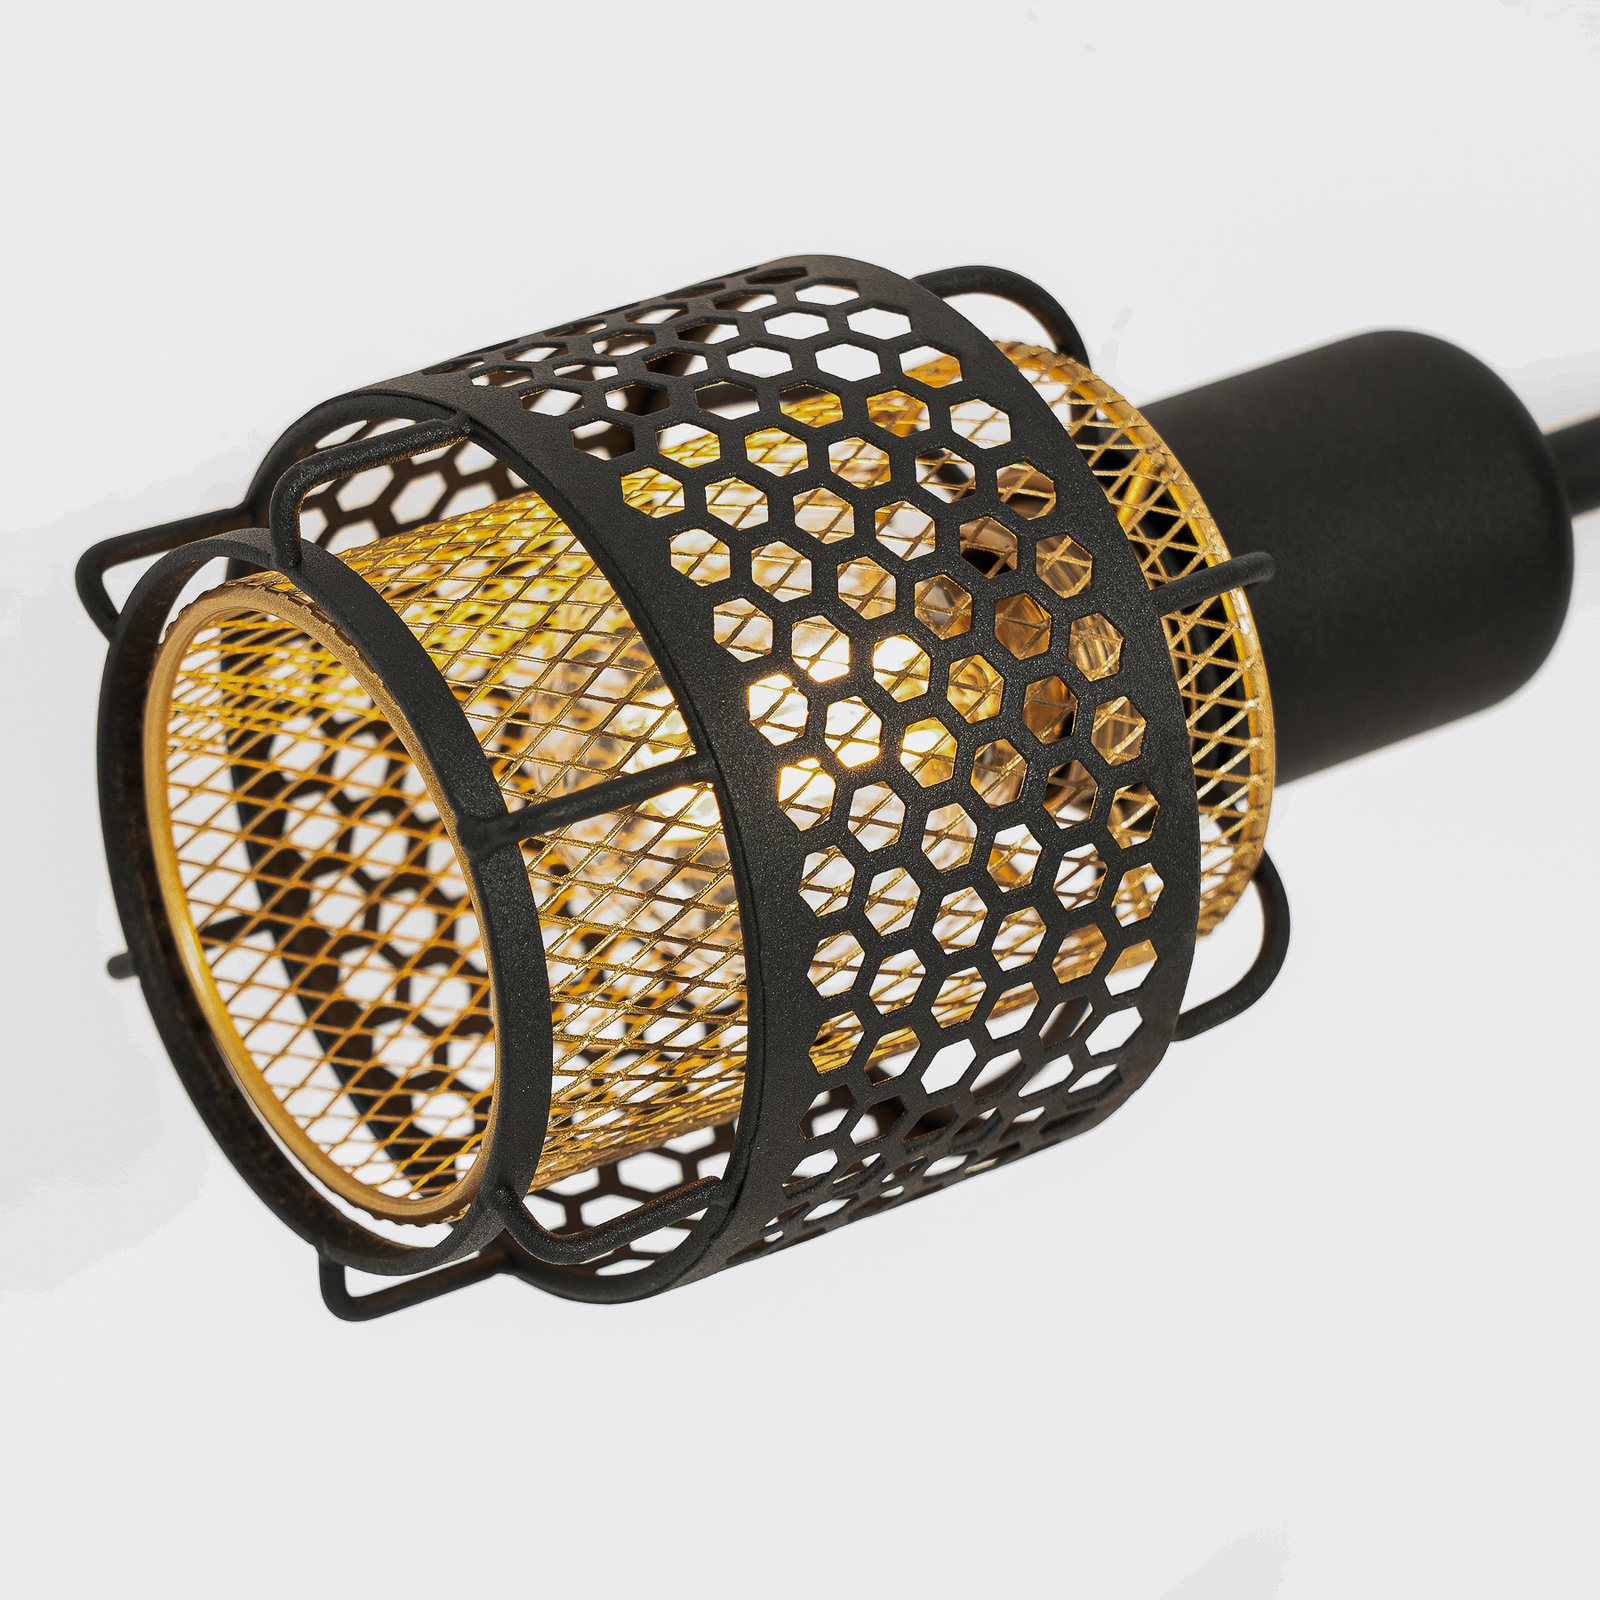 Lindby Eudoria plafondlamp 4-lamps zwart/goud